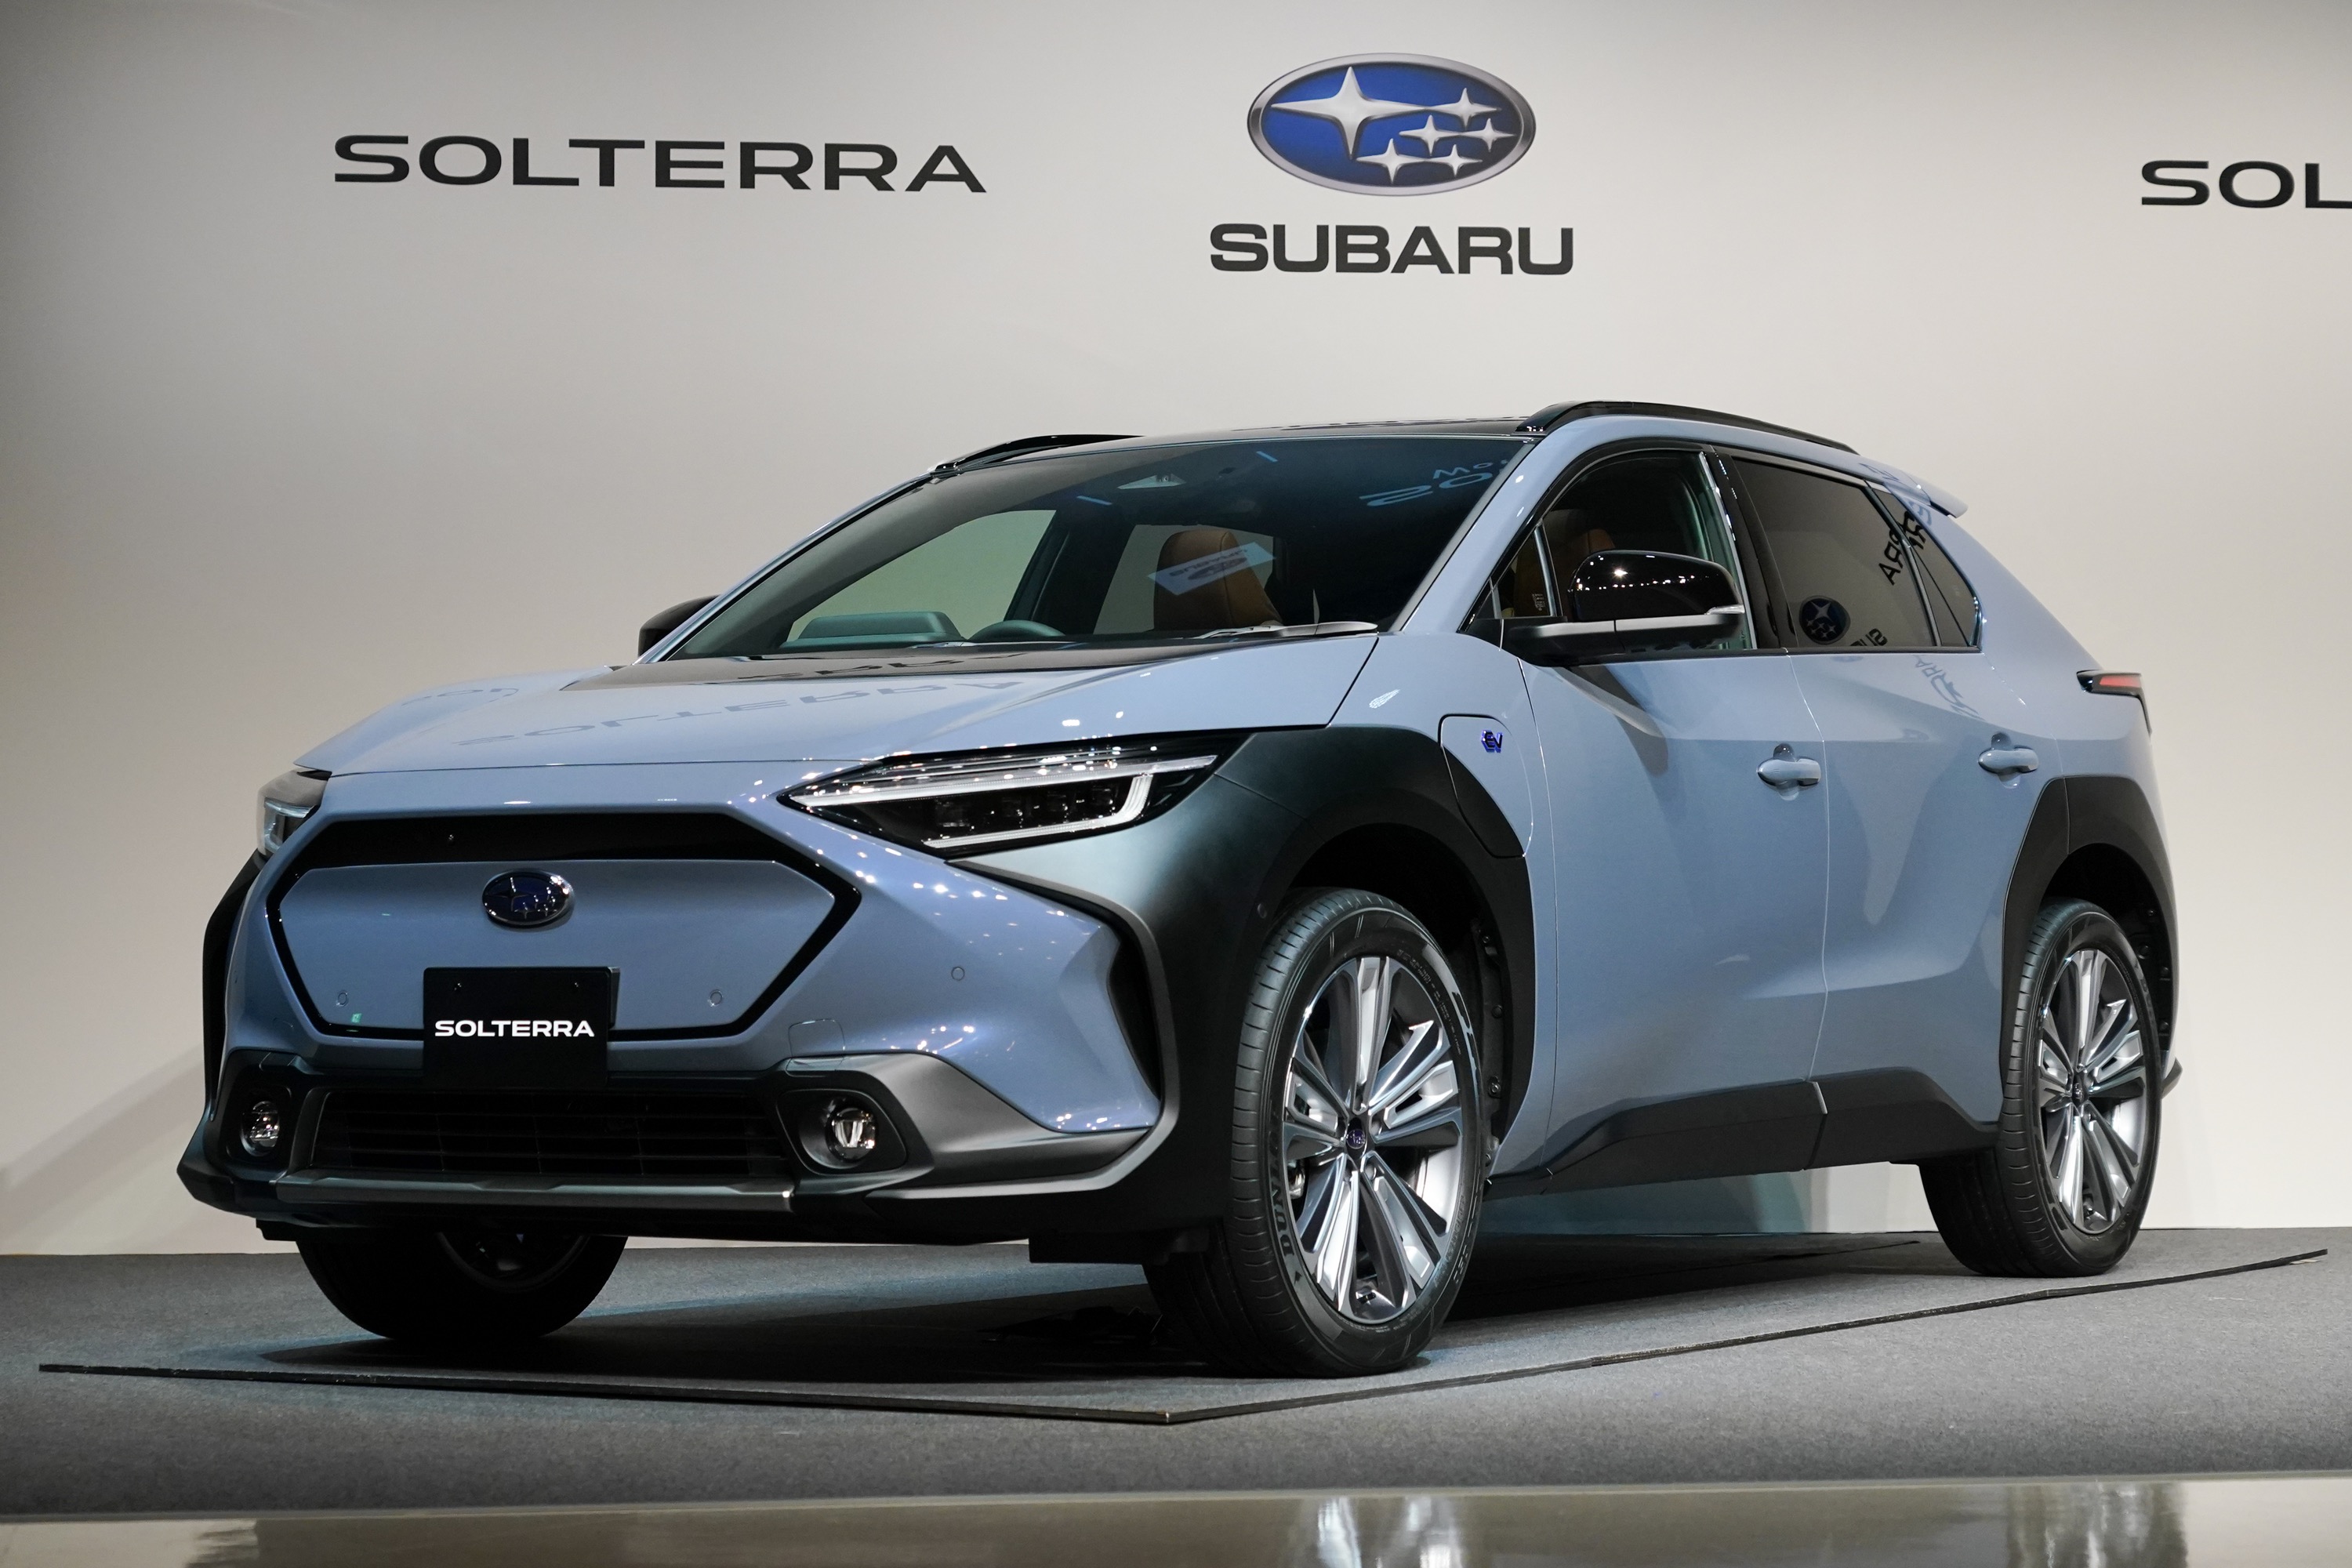 Subaru muestra su primer vehículo eléctrico, el SUV Solterra Liukin